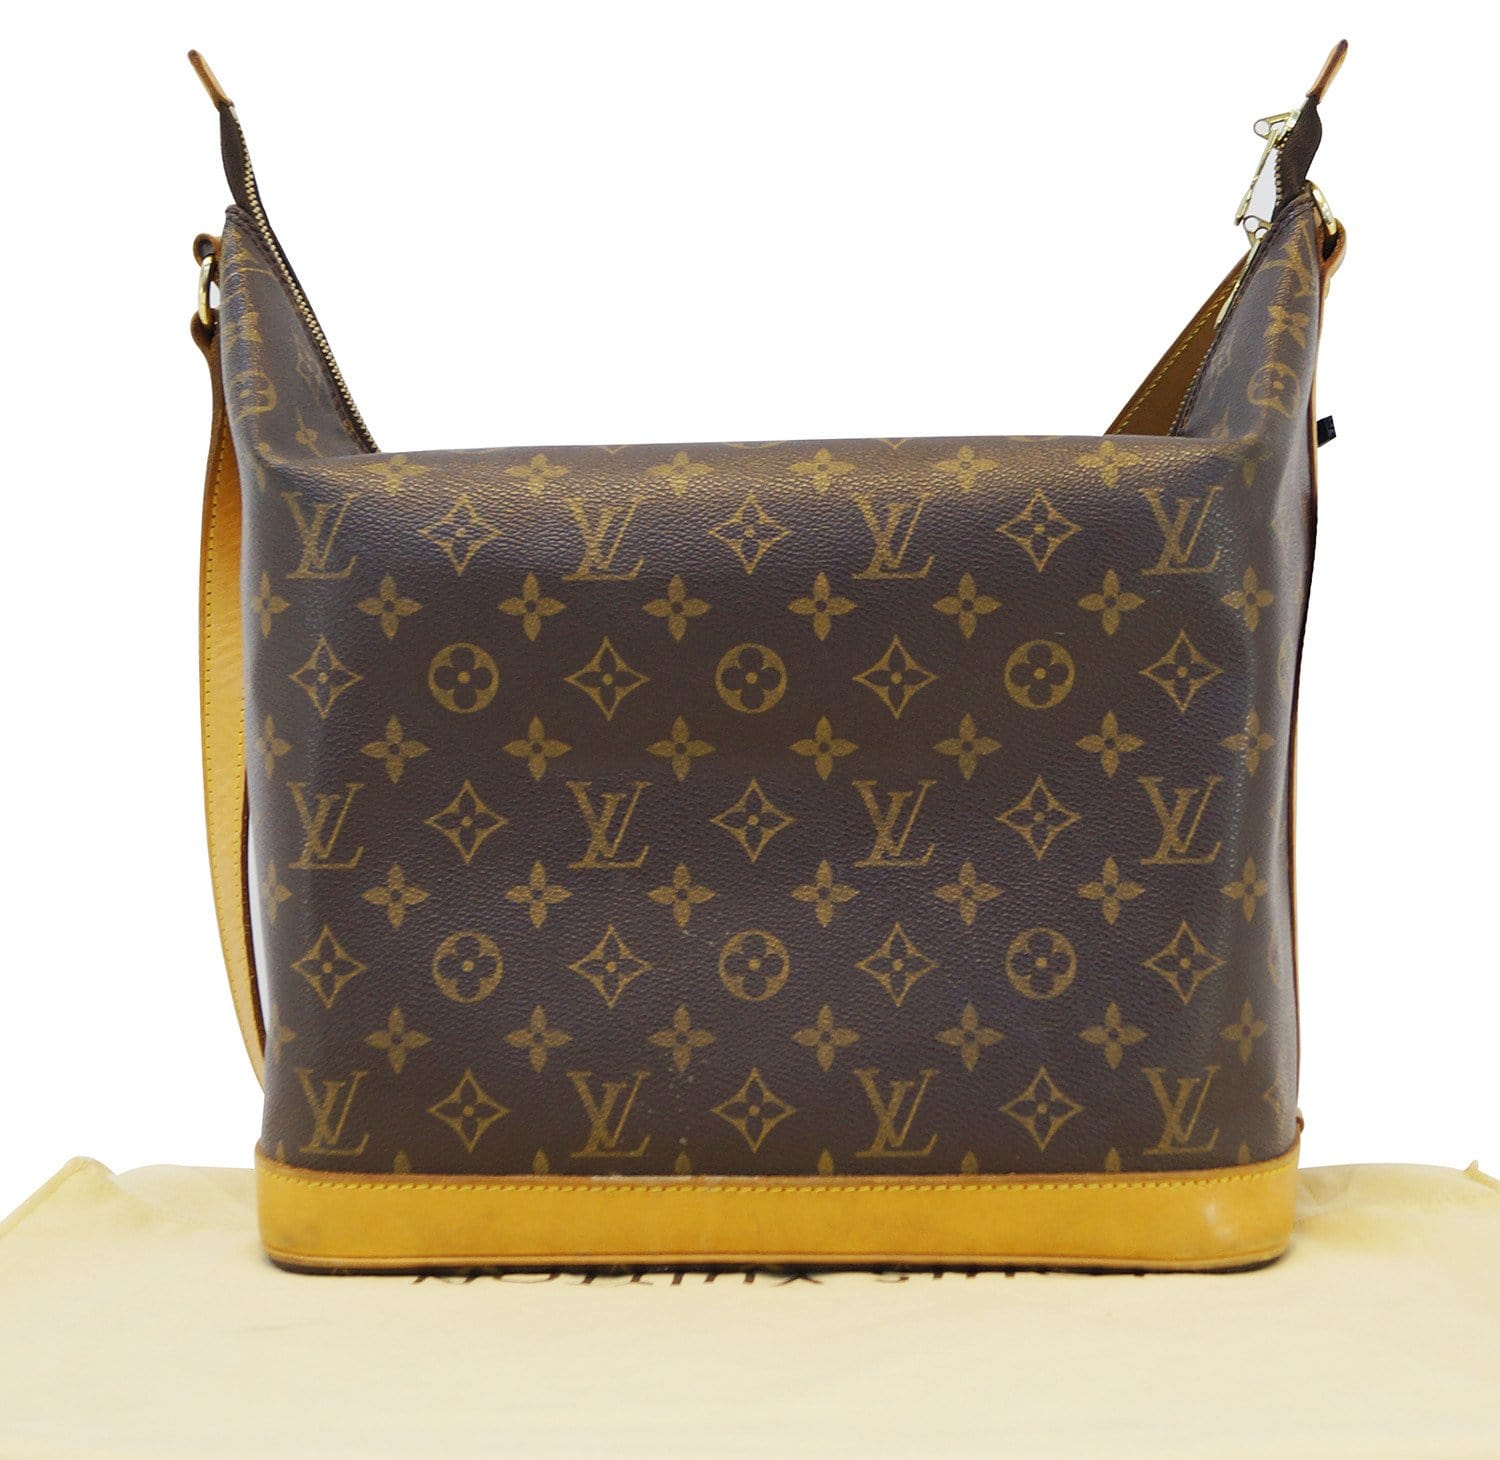 Louis Vuitton Amfar Sharon Stone Bag Vintageschätzchen